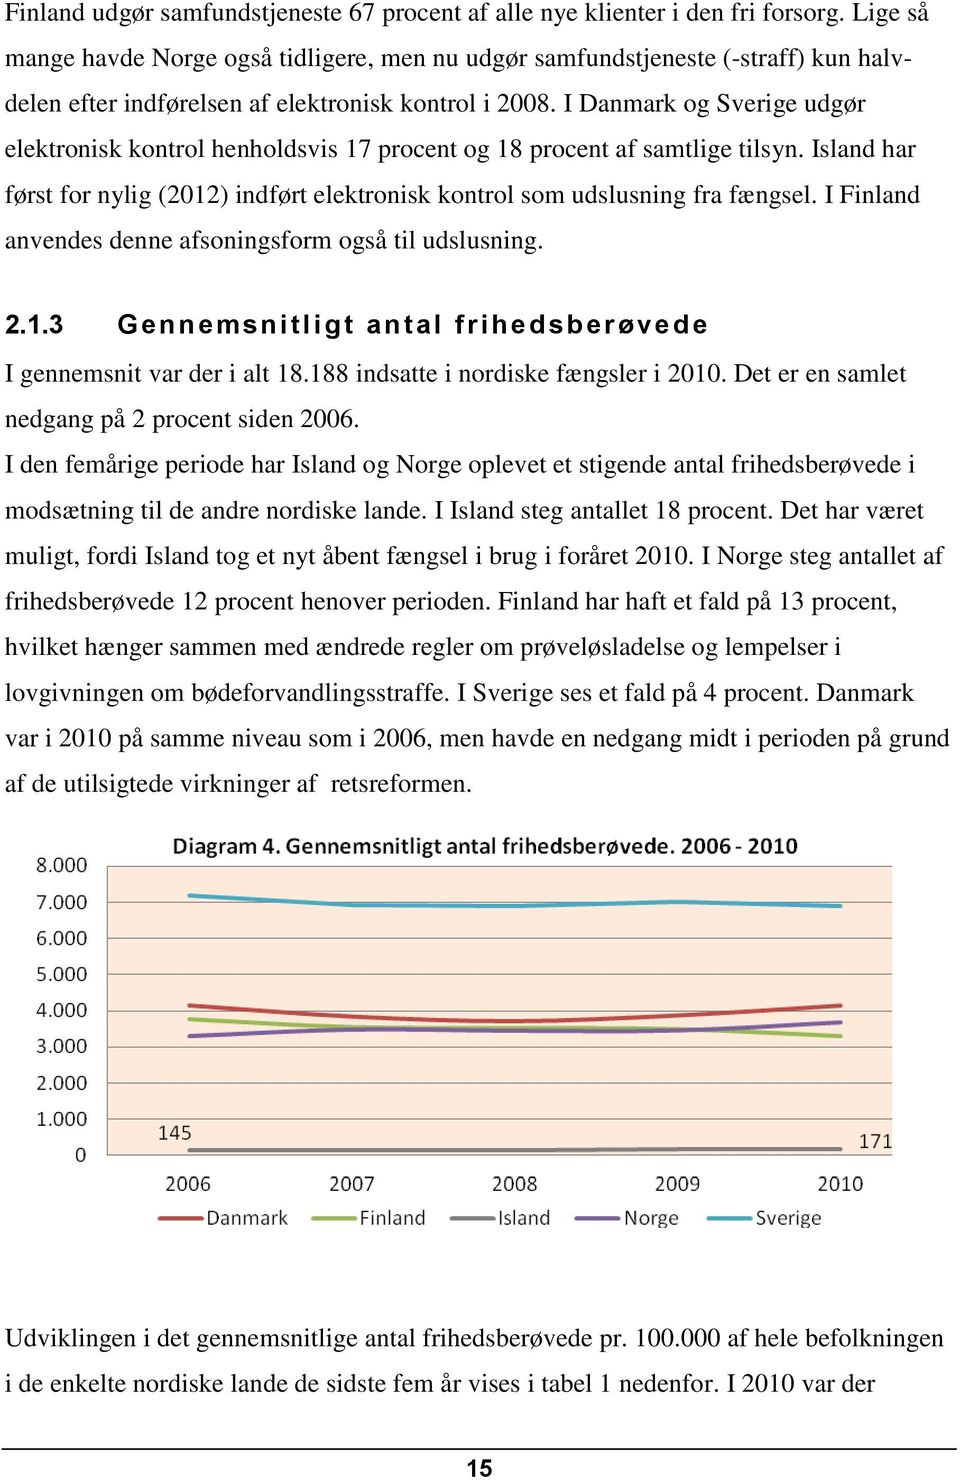 I Danmark og Sverige udgør elektronisk kontrol henholdsvis 17 procent og 18 procent af samtlige tilsyn. Island har først for nylig (2012) indført elektronisk kontrol som udslusning fra fængsel.